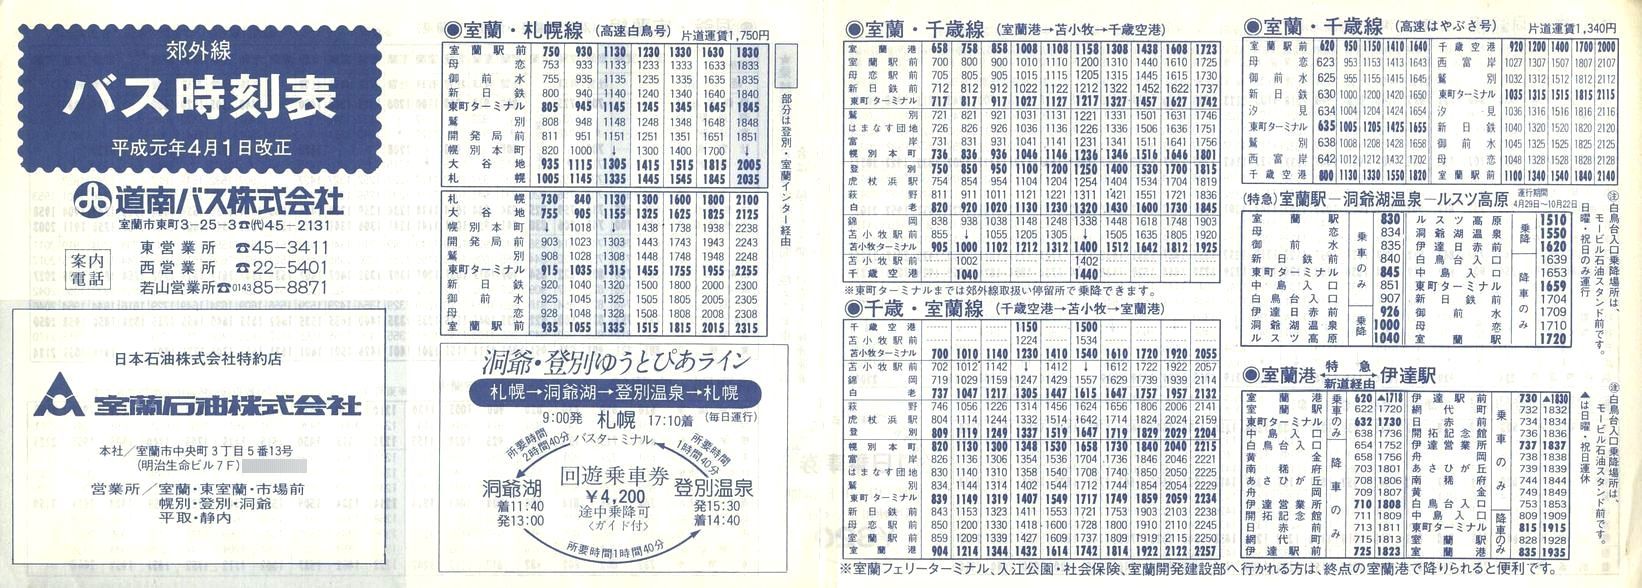 1989-04-01改正_道南バス_室蘭版郊外線時刻表表面